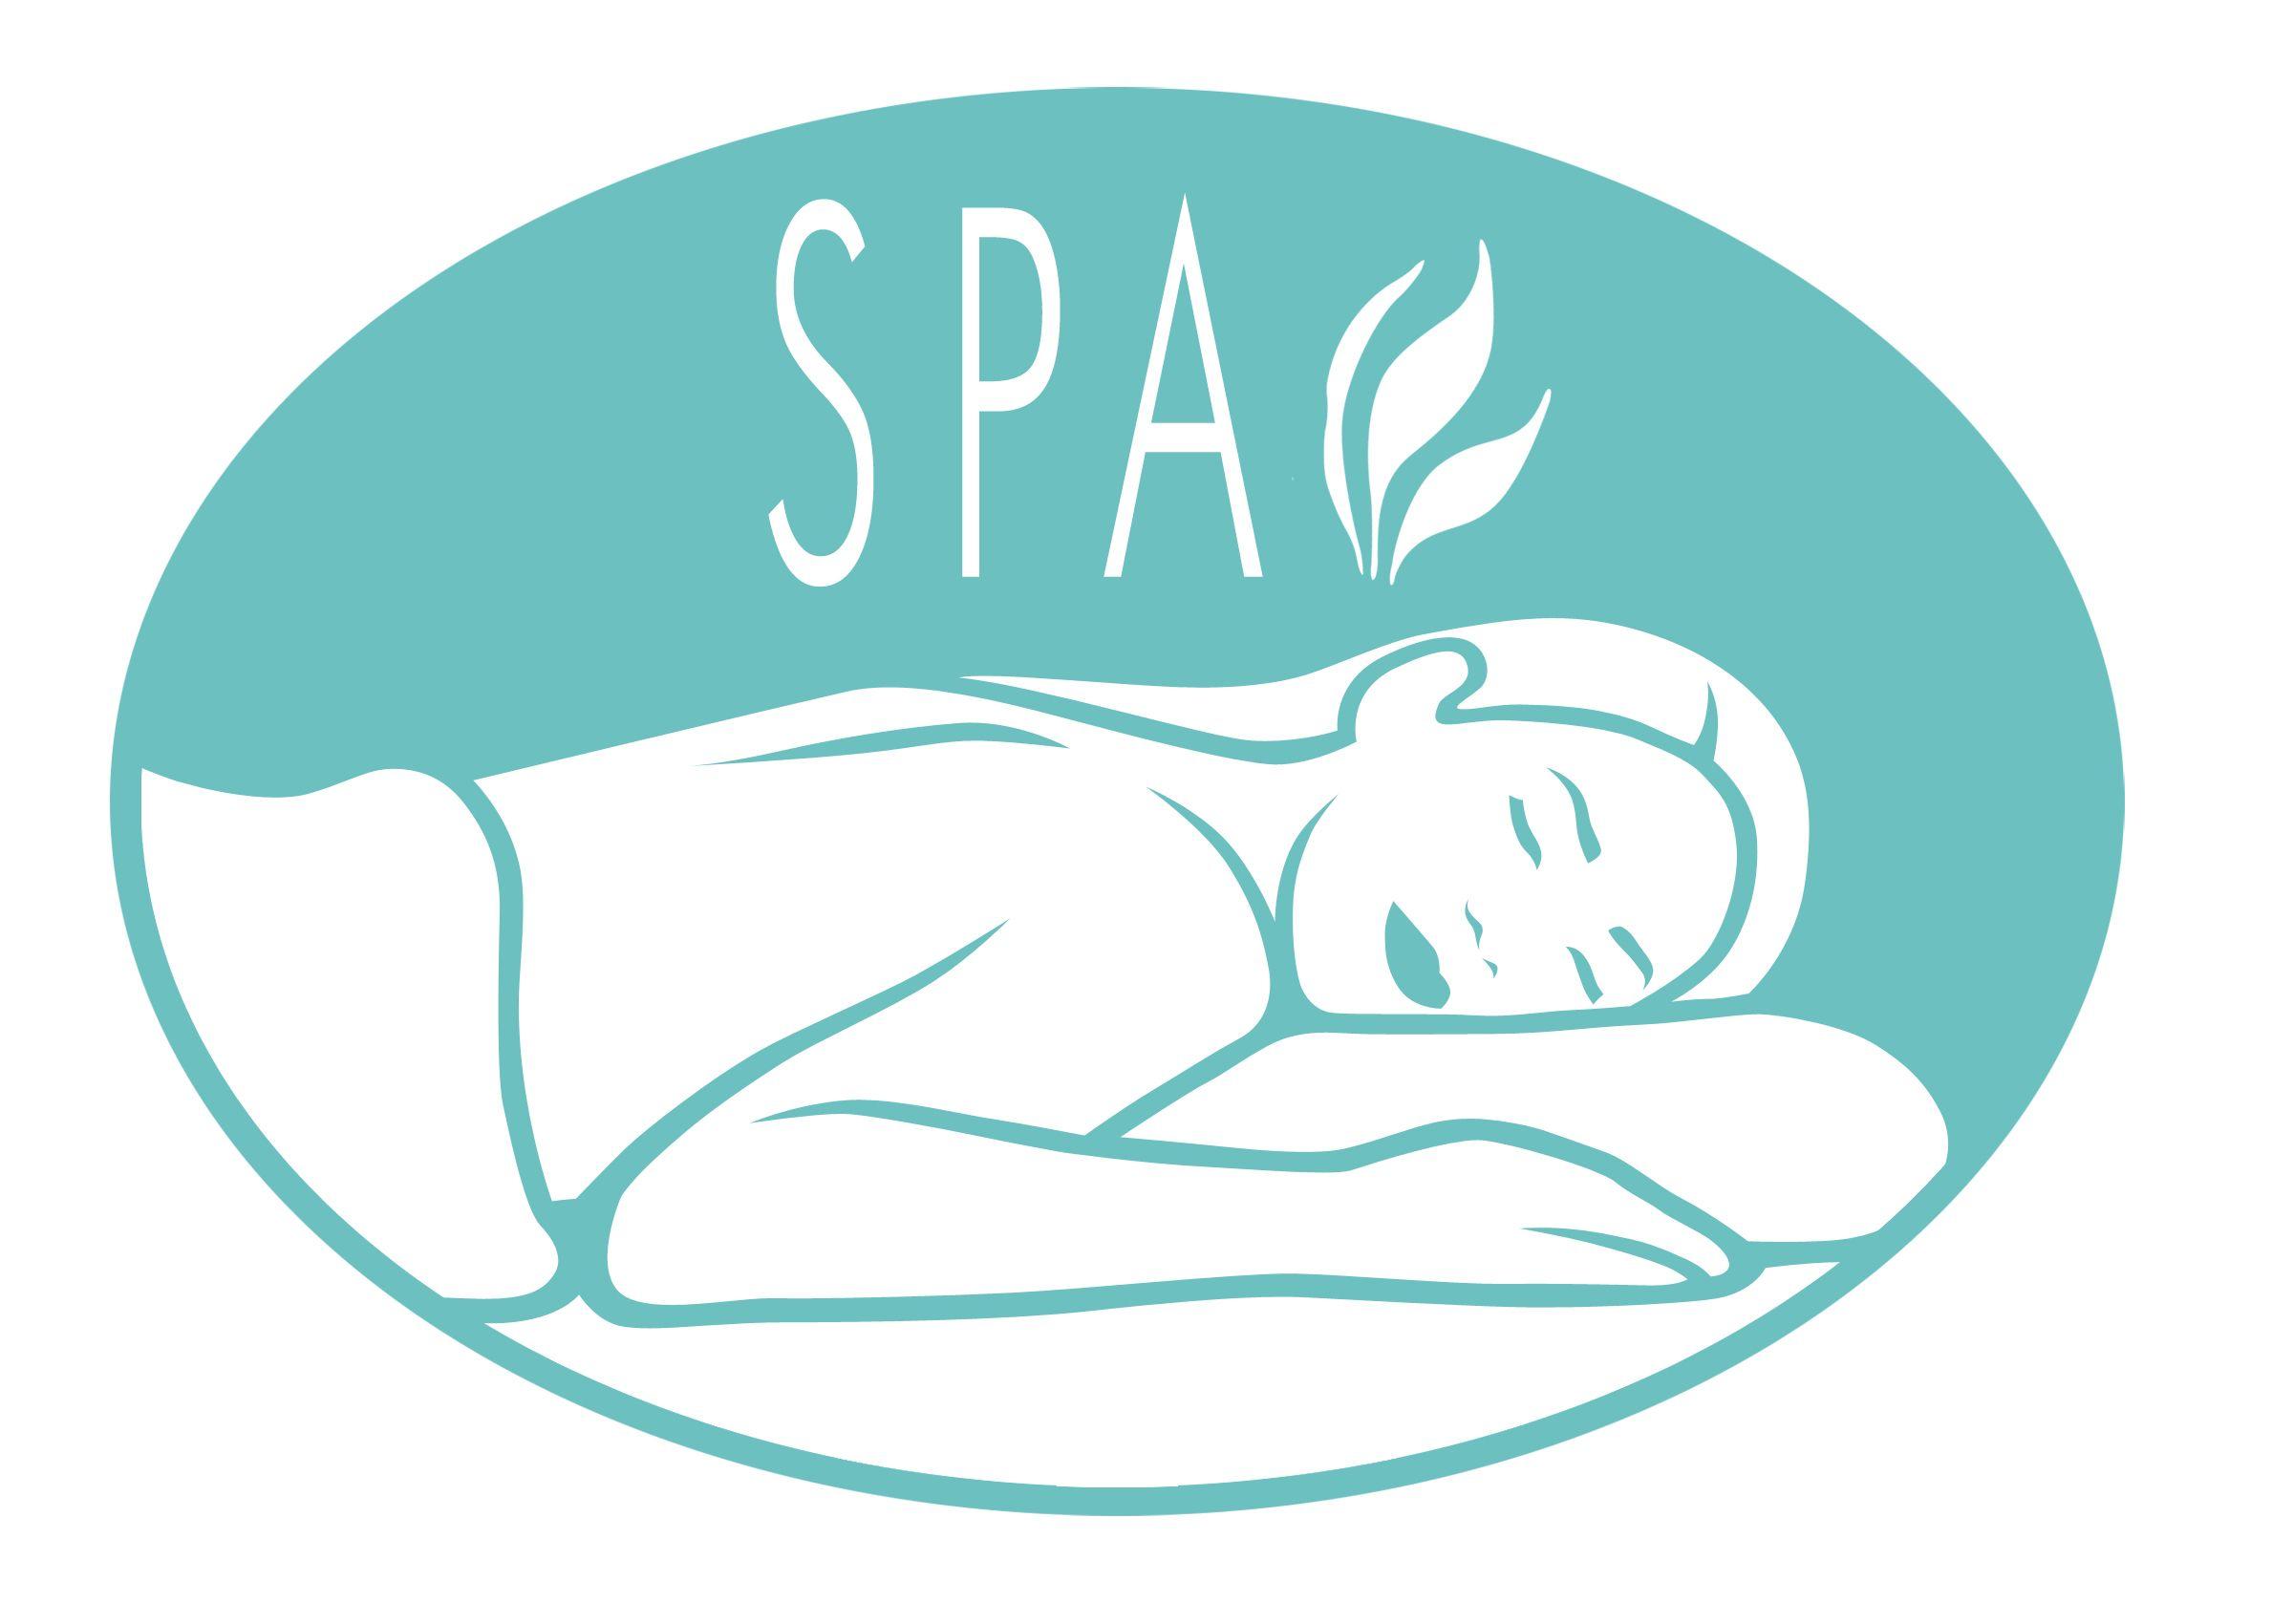 Spa Logo - Creating a Calming Spa Logo With Positive Energy • Online Logo ...